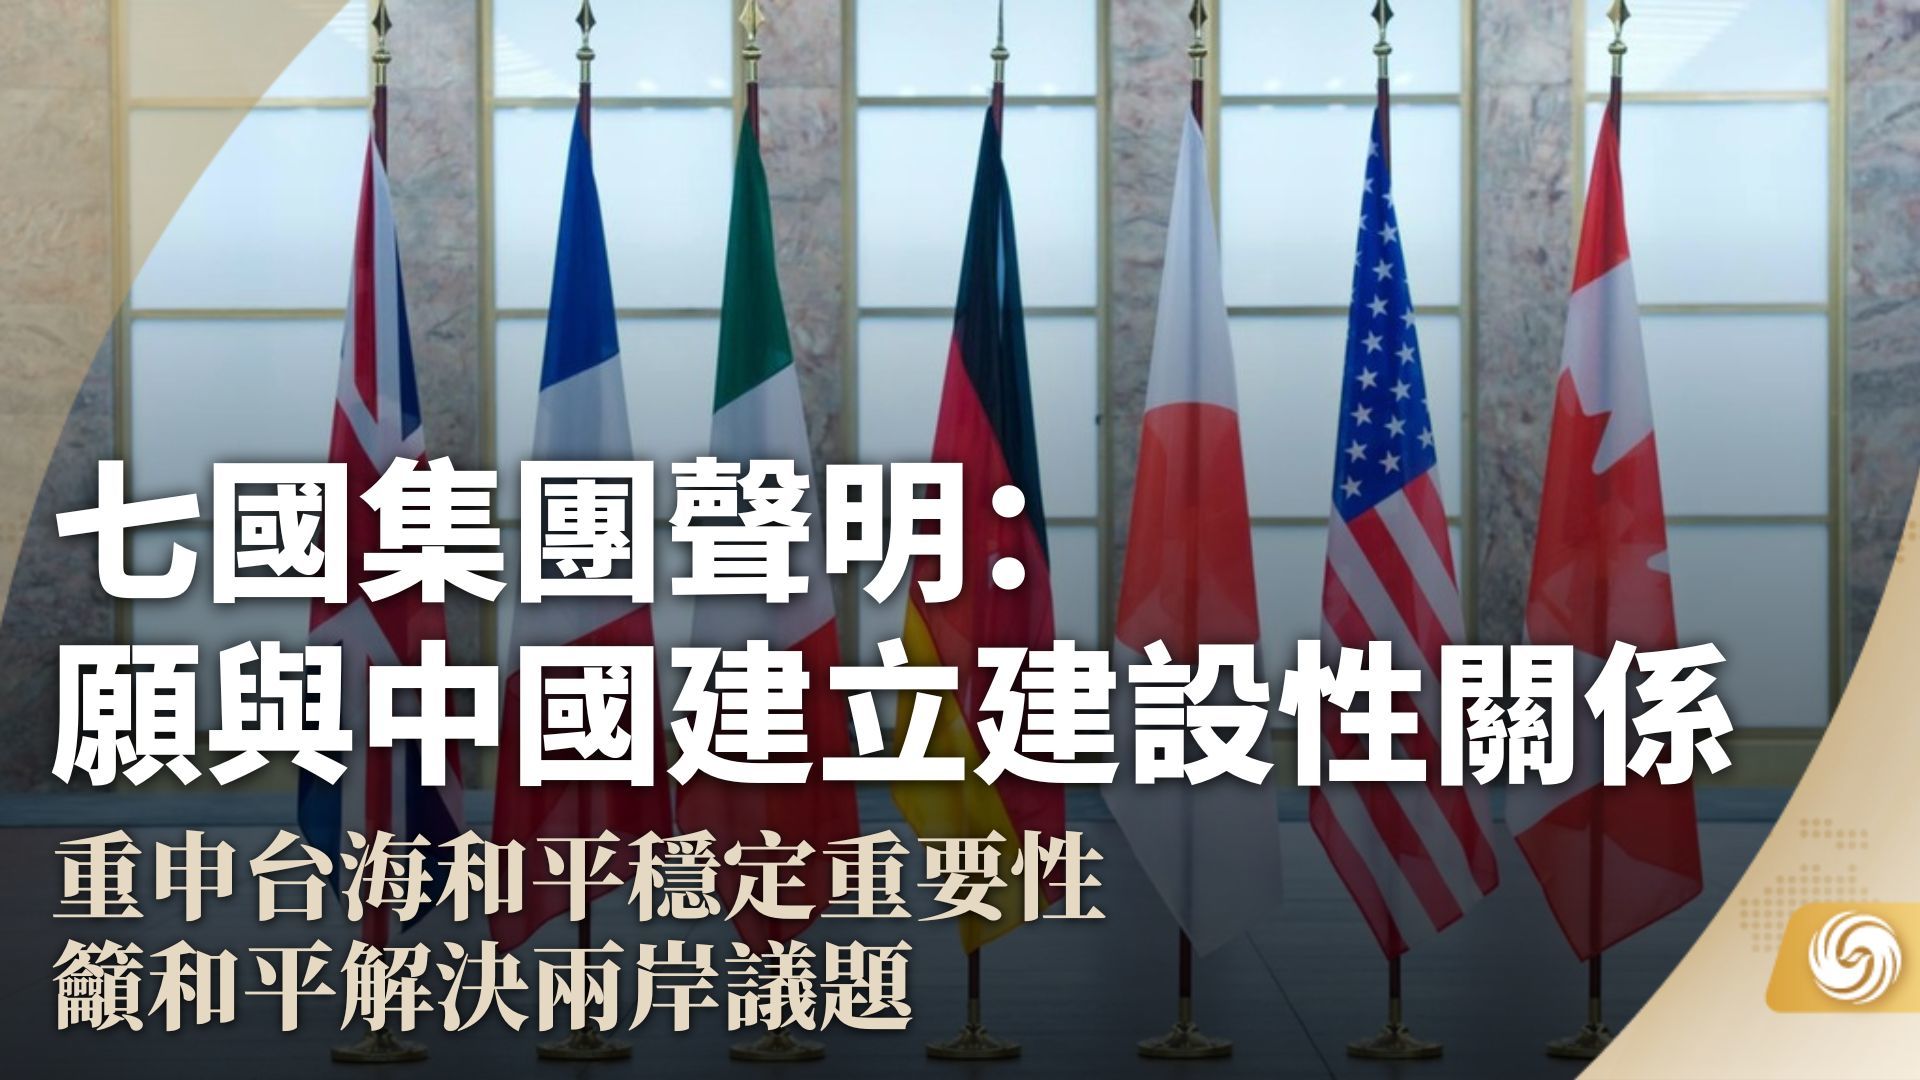 七国集团声明：愿与中国建立建设性关系